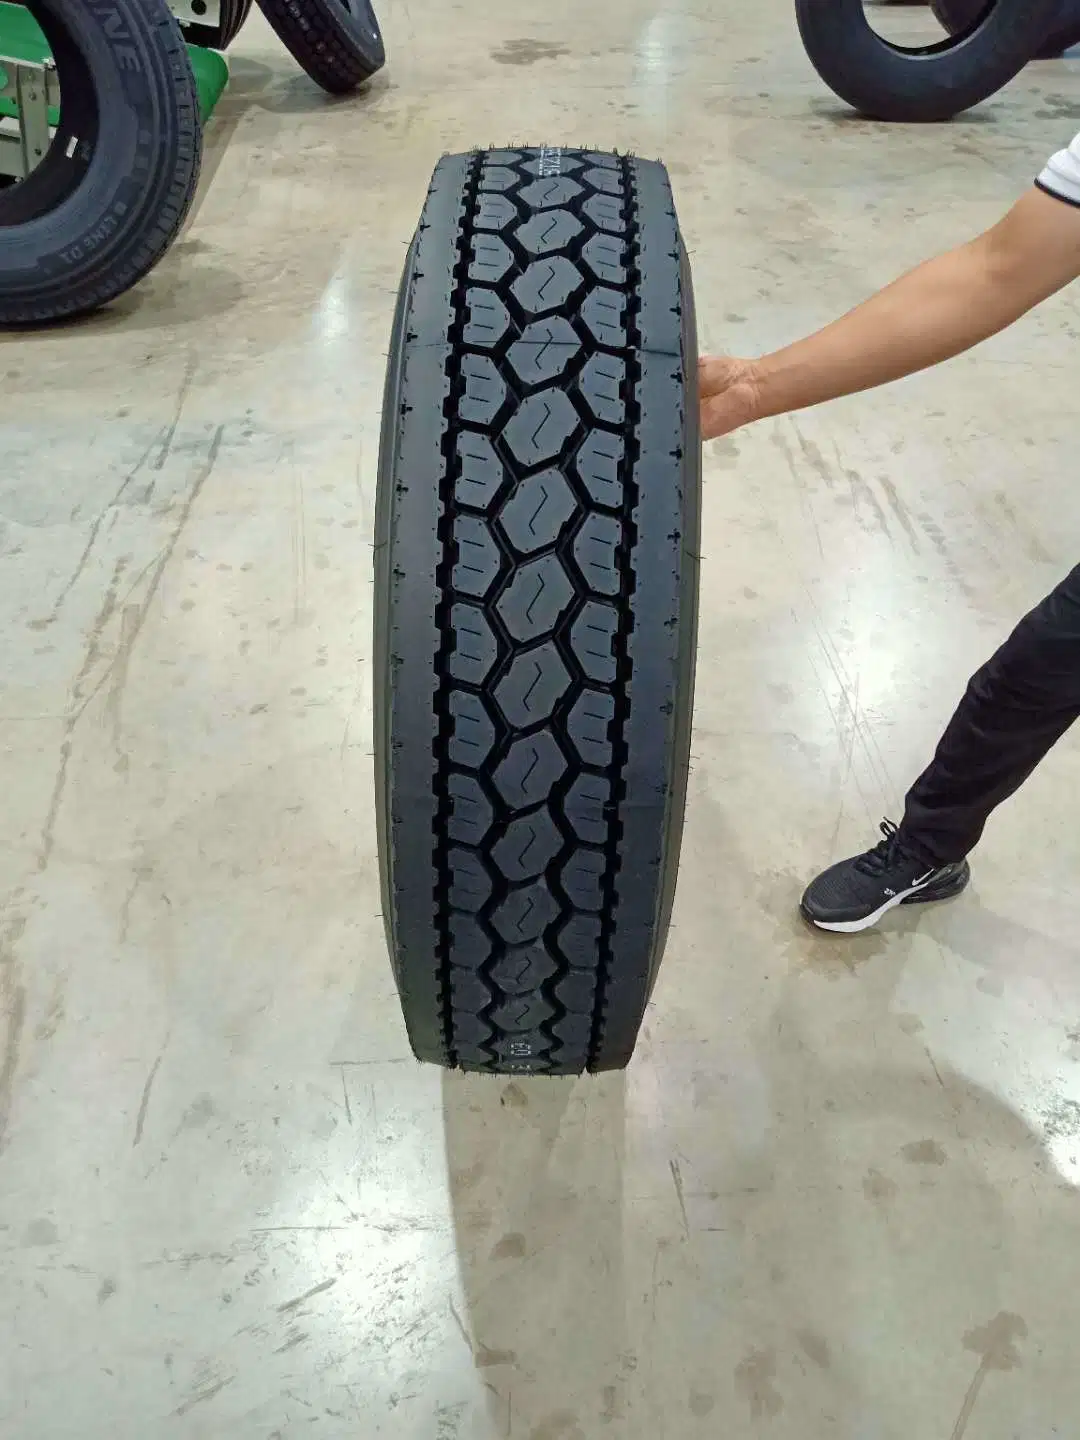 Les pneus de TBR ergot Pattern bon prix de gros d'alimentation en usine avec la CEE DOT GCC certification nouveaux semi tubeless radial de bonne qualité des pneus de camions légers et lourds